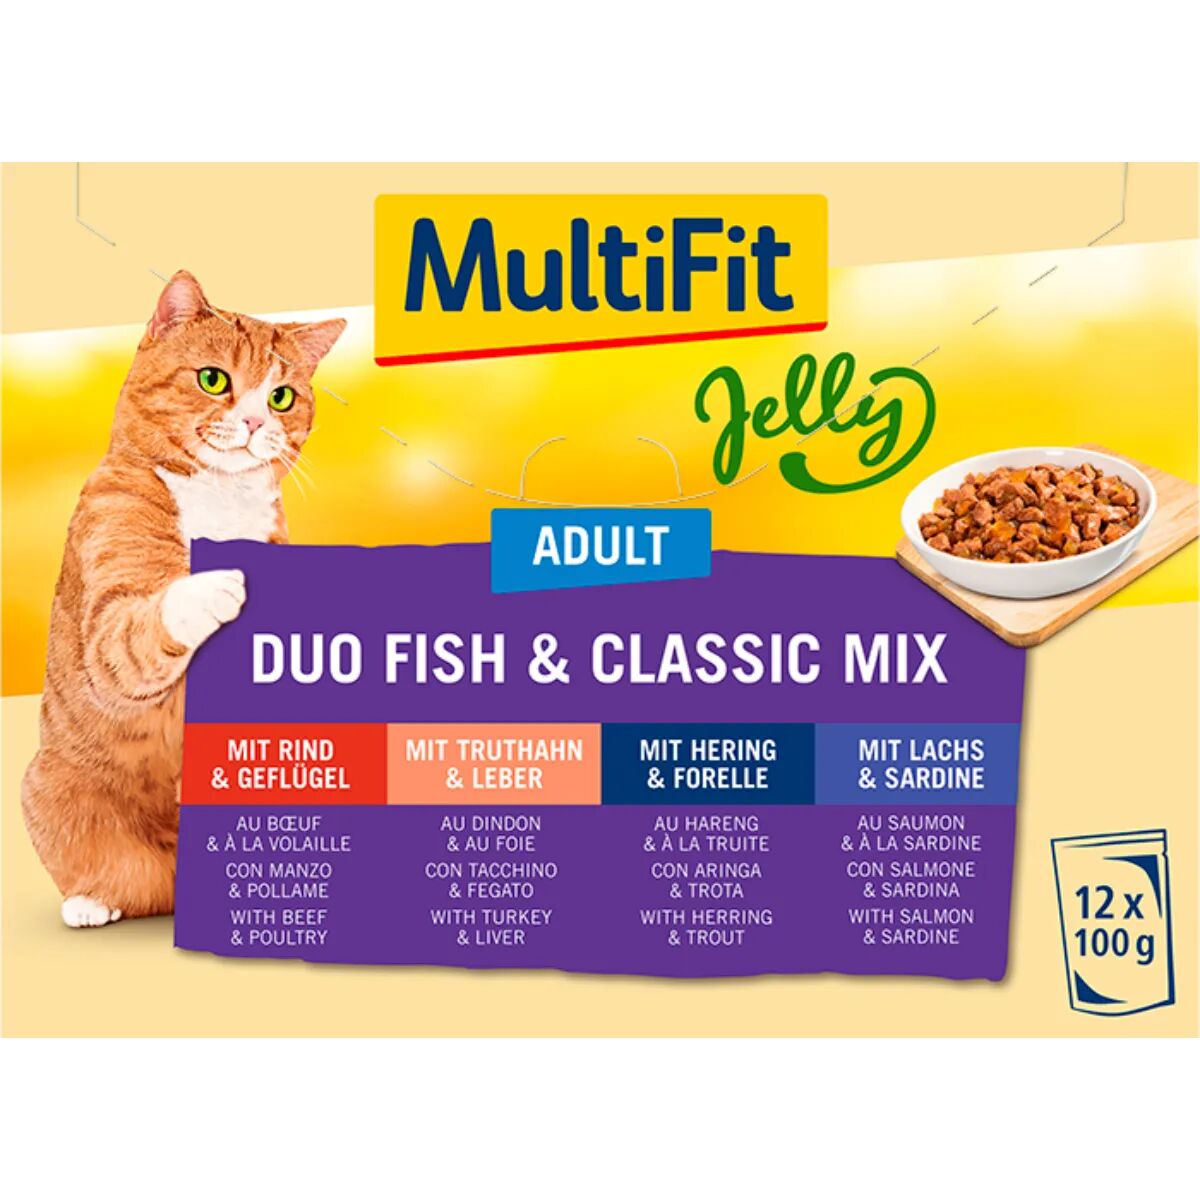 MULTIFIT Jelly Cat Busta Multipack 12x100G MIX CARNE E PESCE